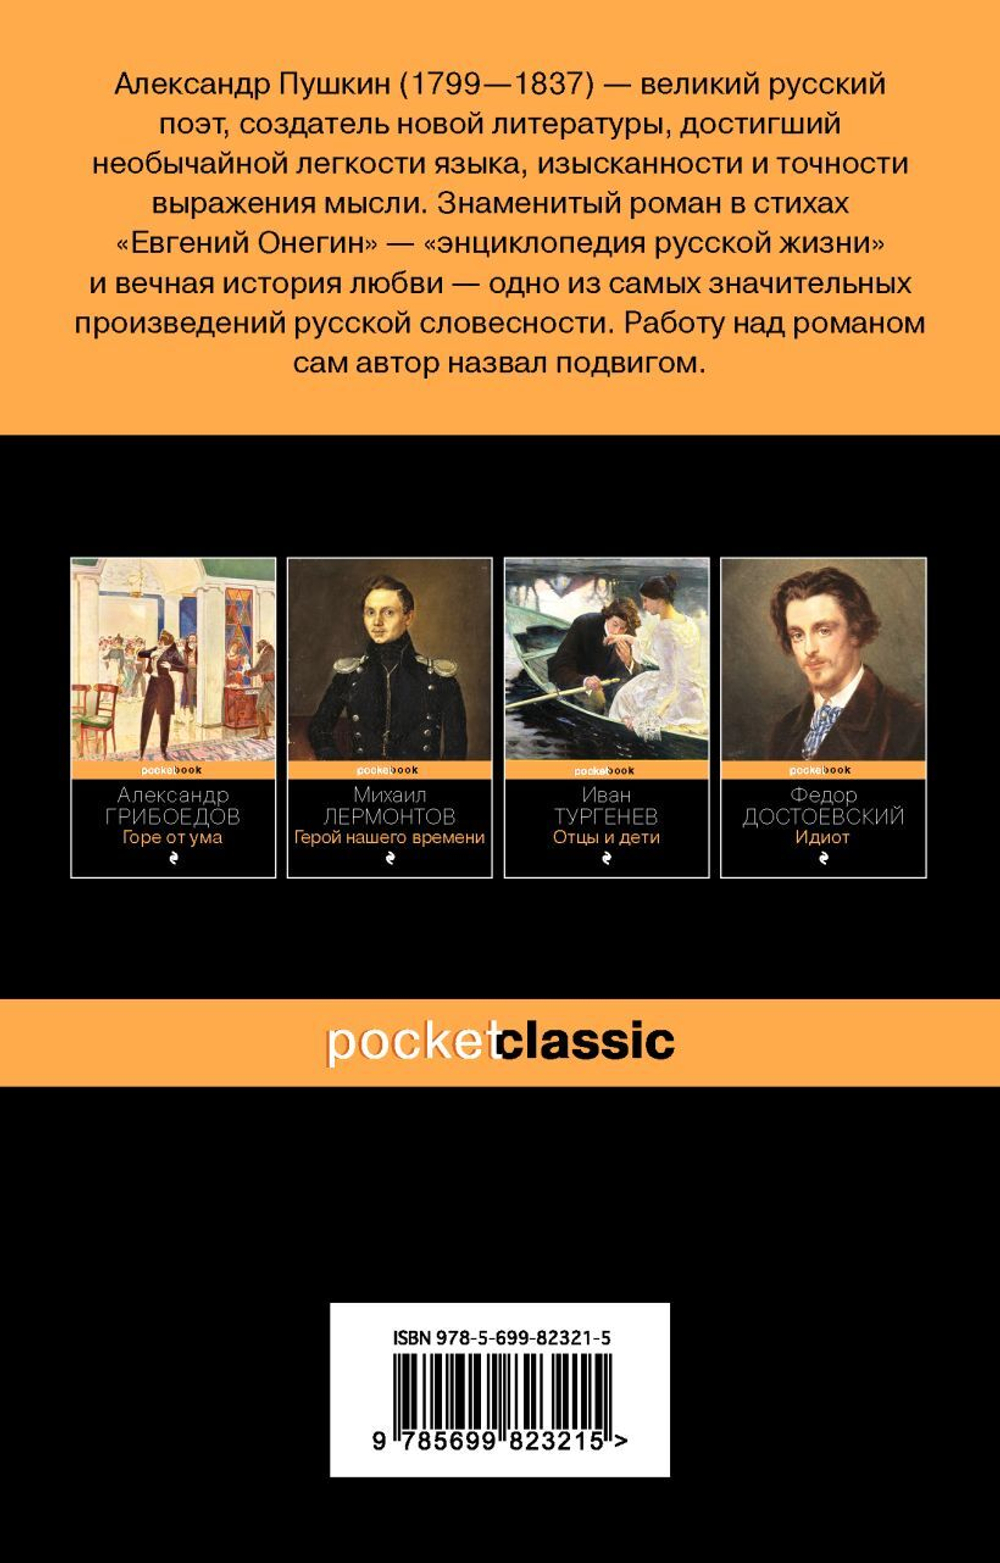 Первый роман в стихах: топ-10 интересных фактов о «Евгении Онегине» Пушкина